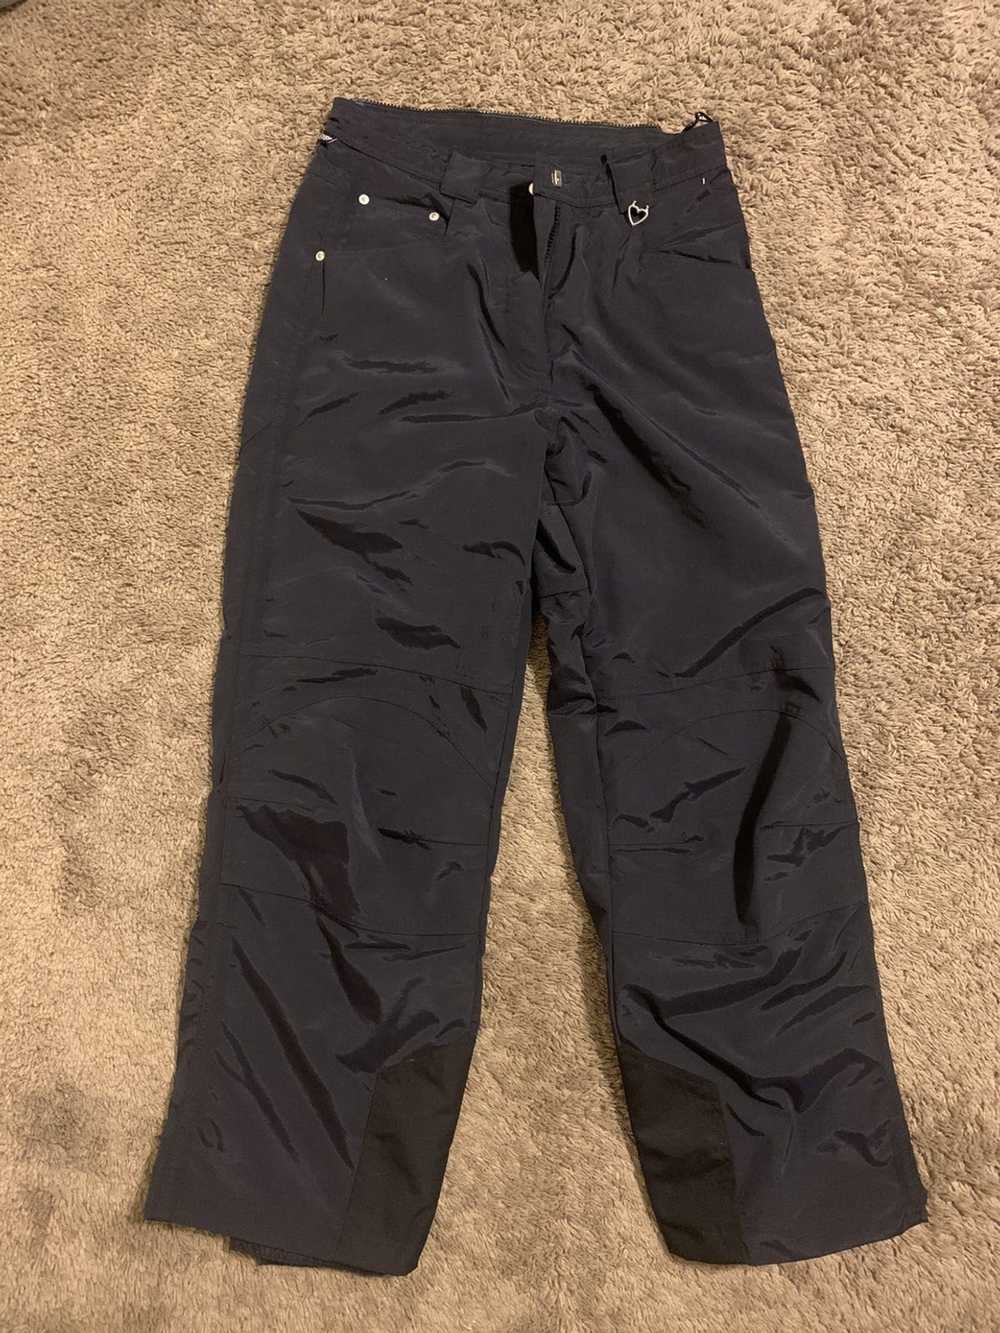 Vintage obermeyer ski pants - Gem